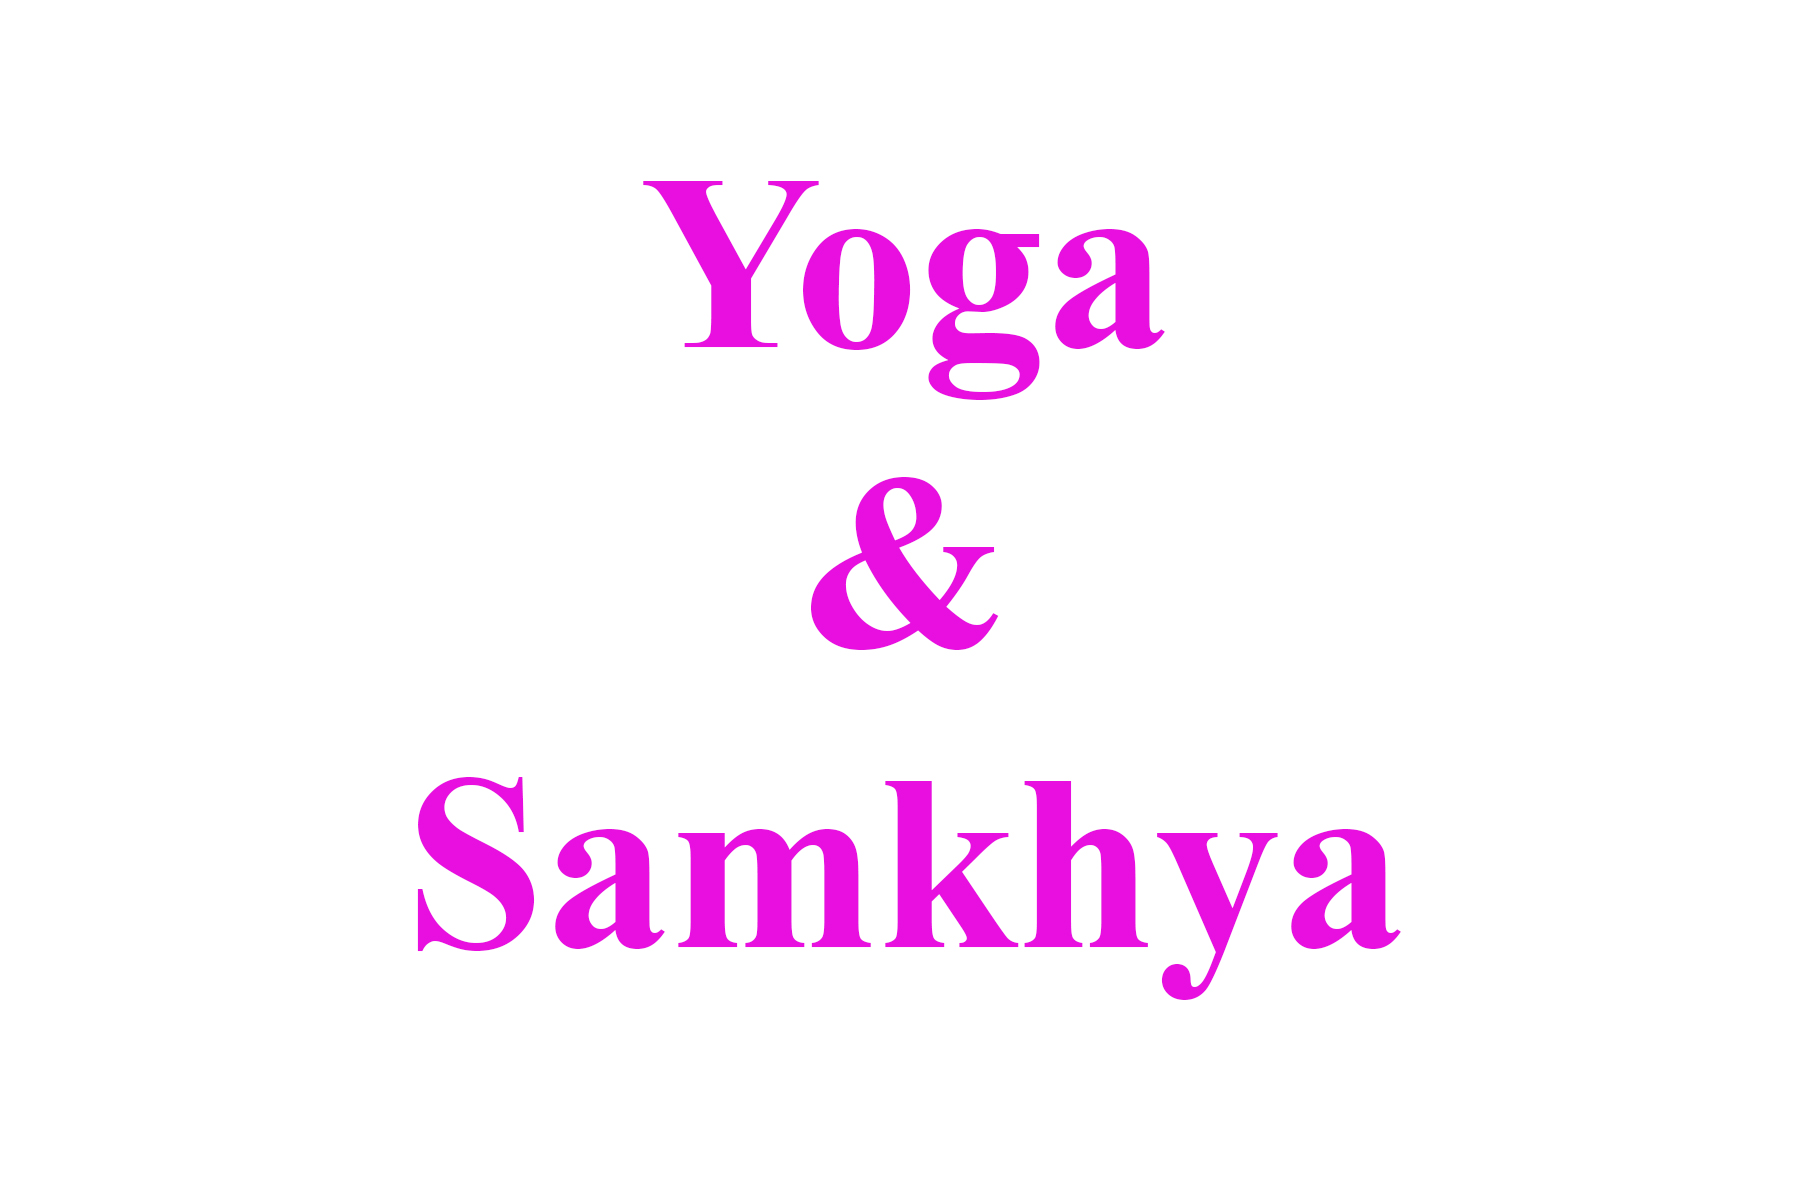 Samkhya & Yoga